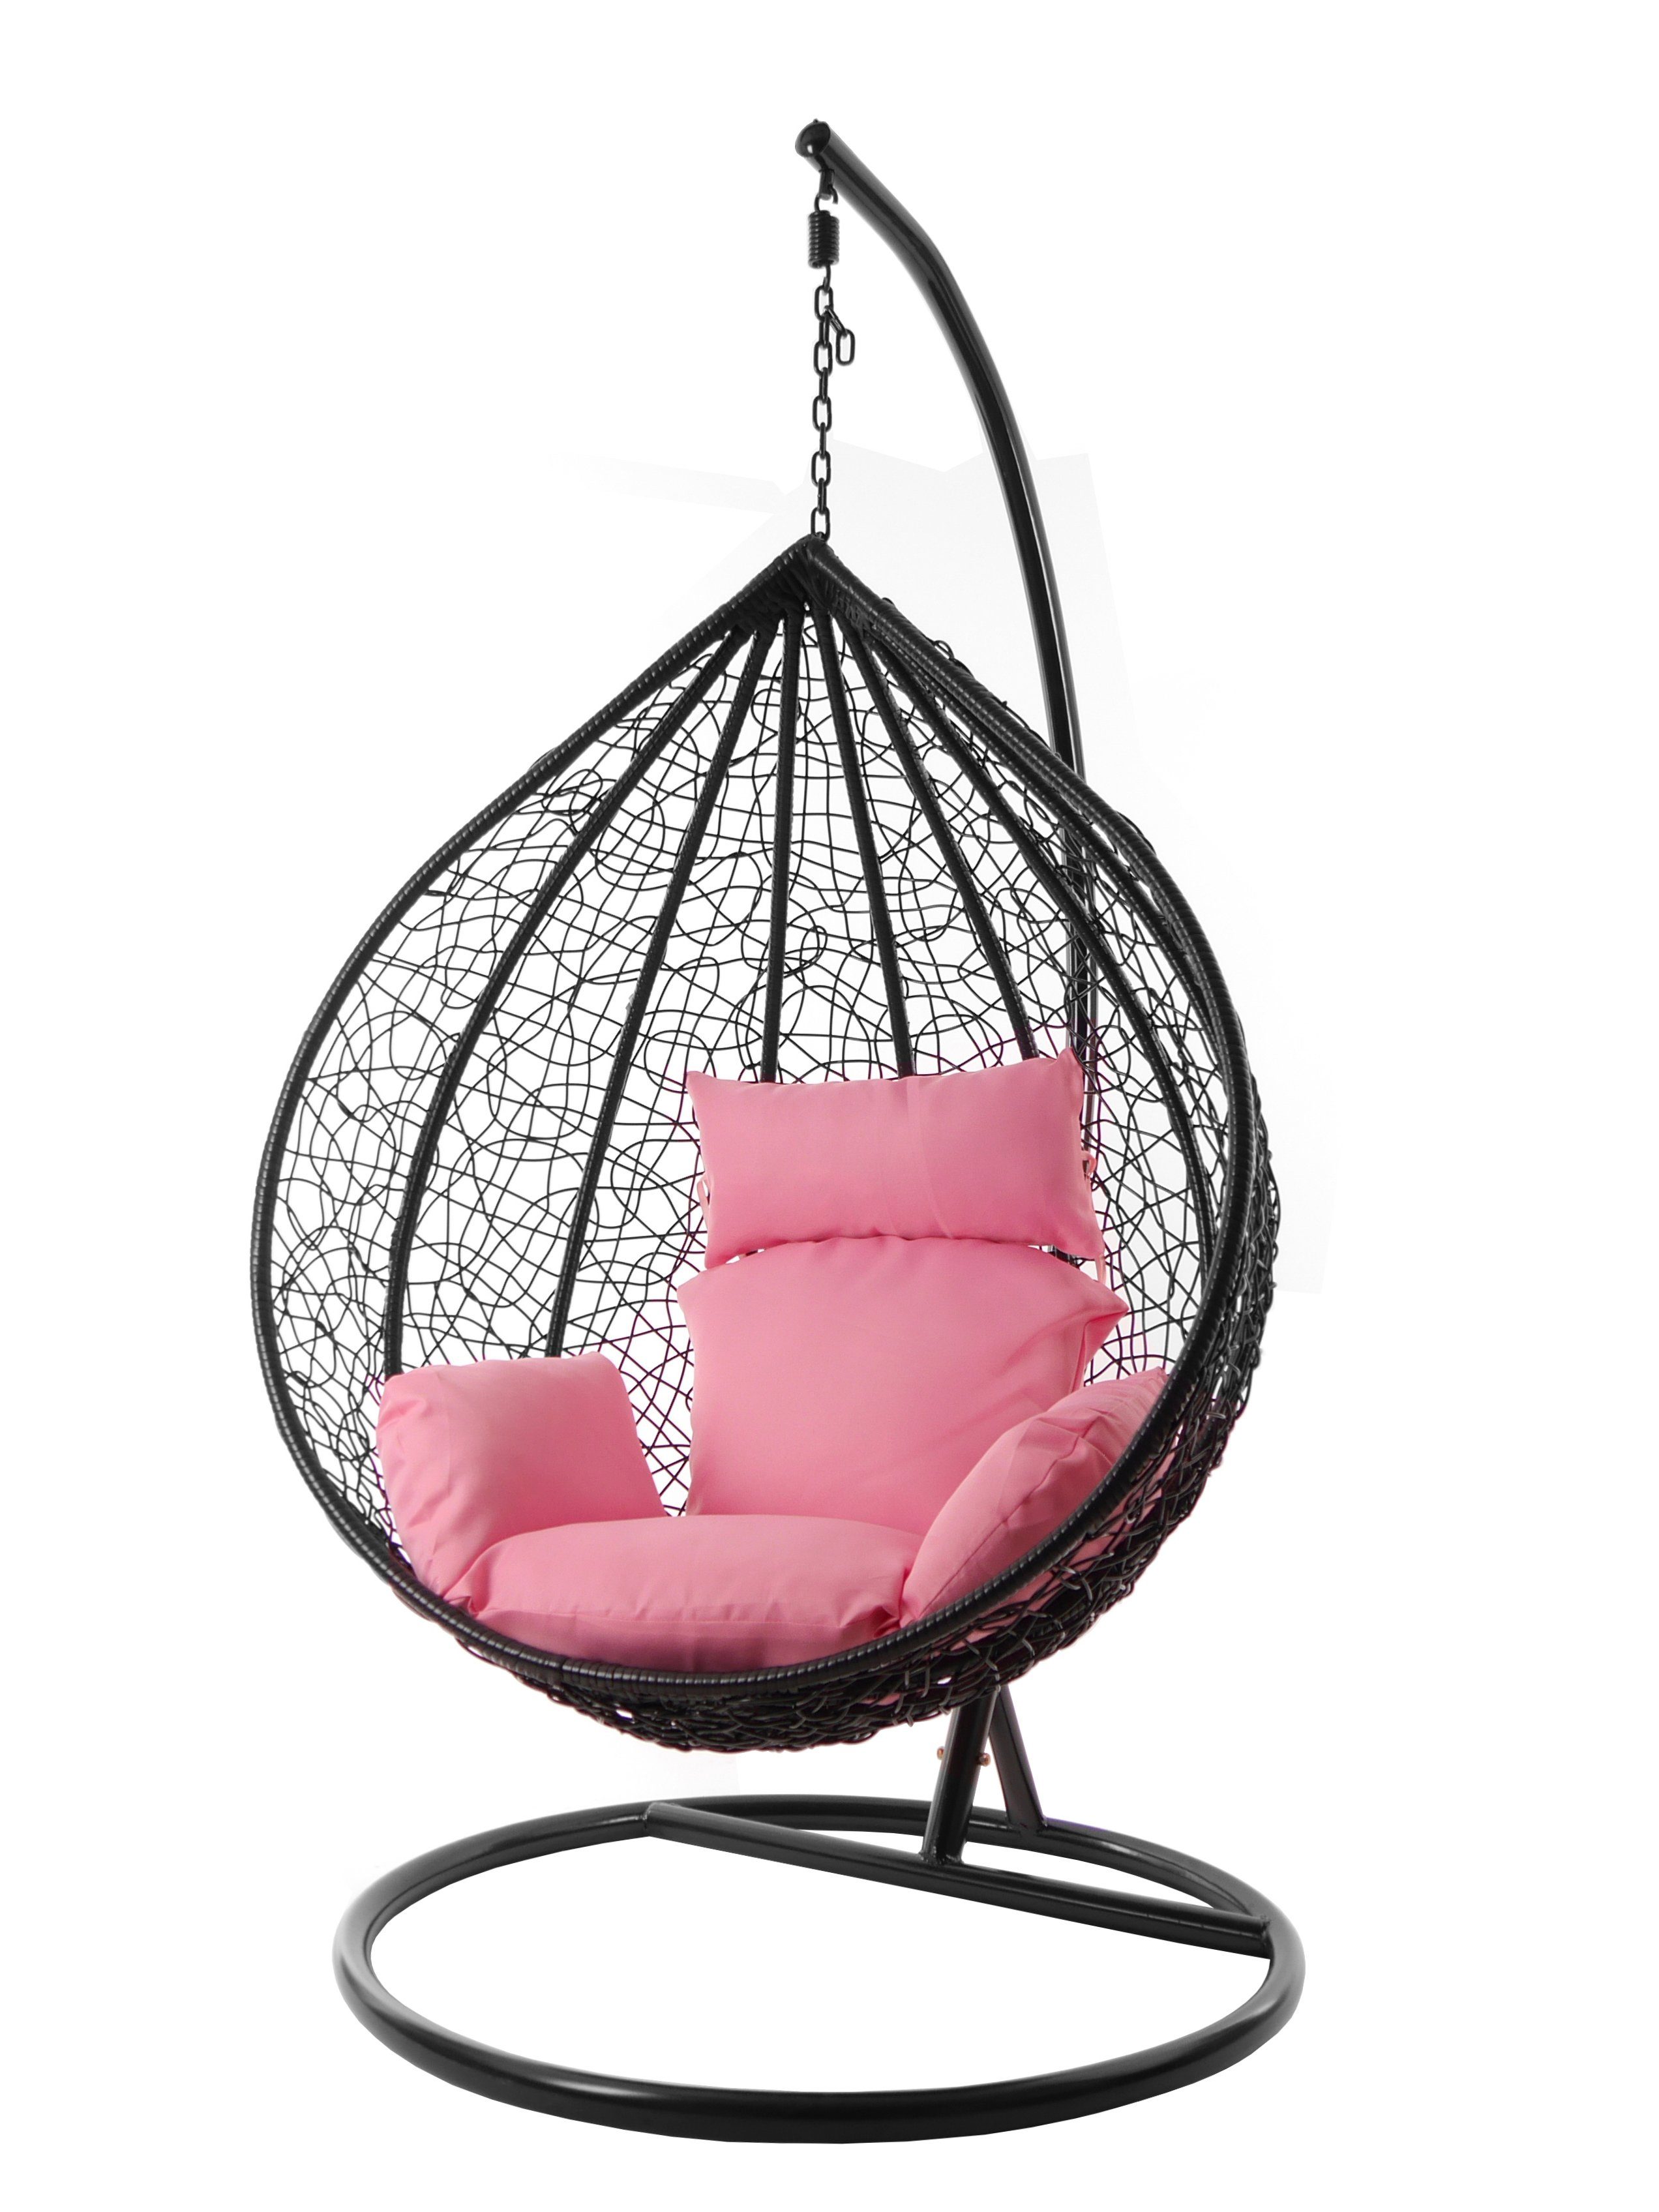 KIDEO Hängesessel Hängesessel MANACOR schwarz, XXL Swing Chair, edel, Gestell und Kissen inklusive, Nest-Kissen, verschiedene Farben rosa (3002 lemonade)